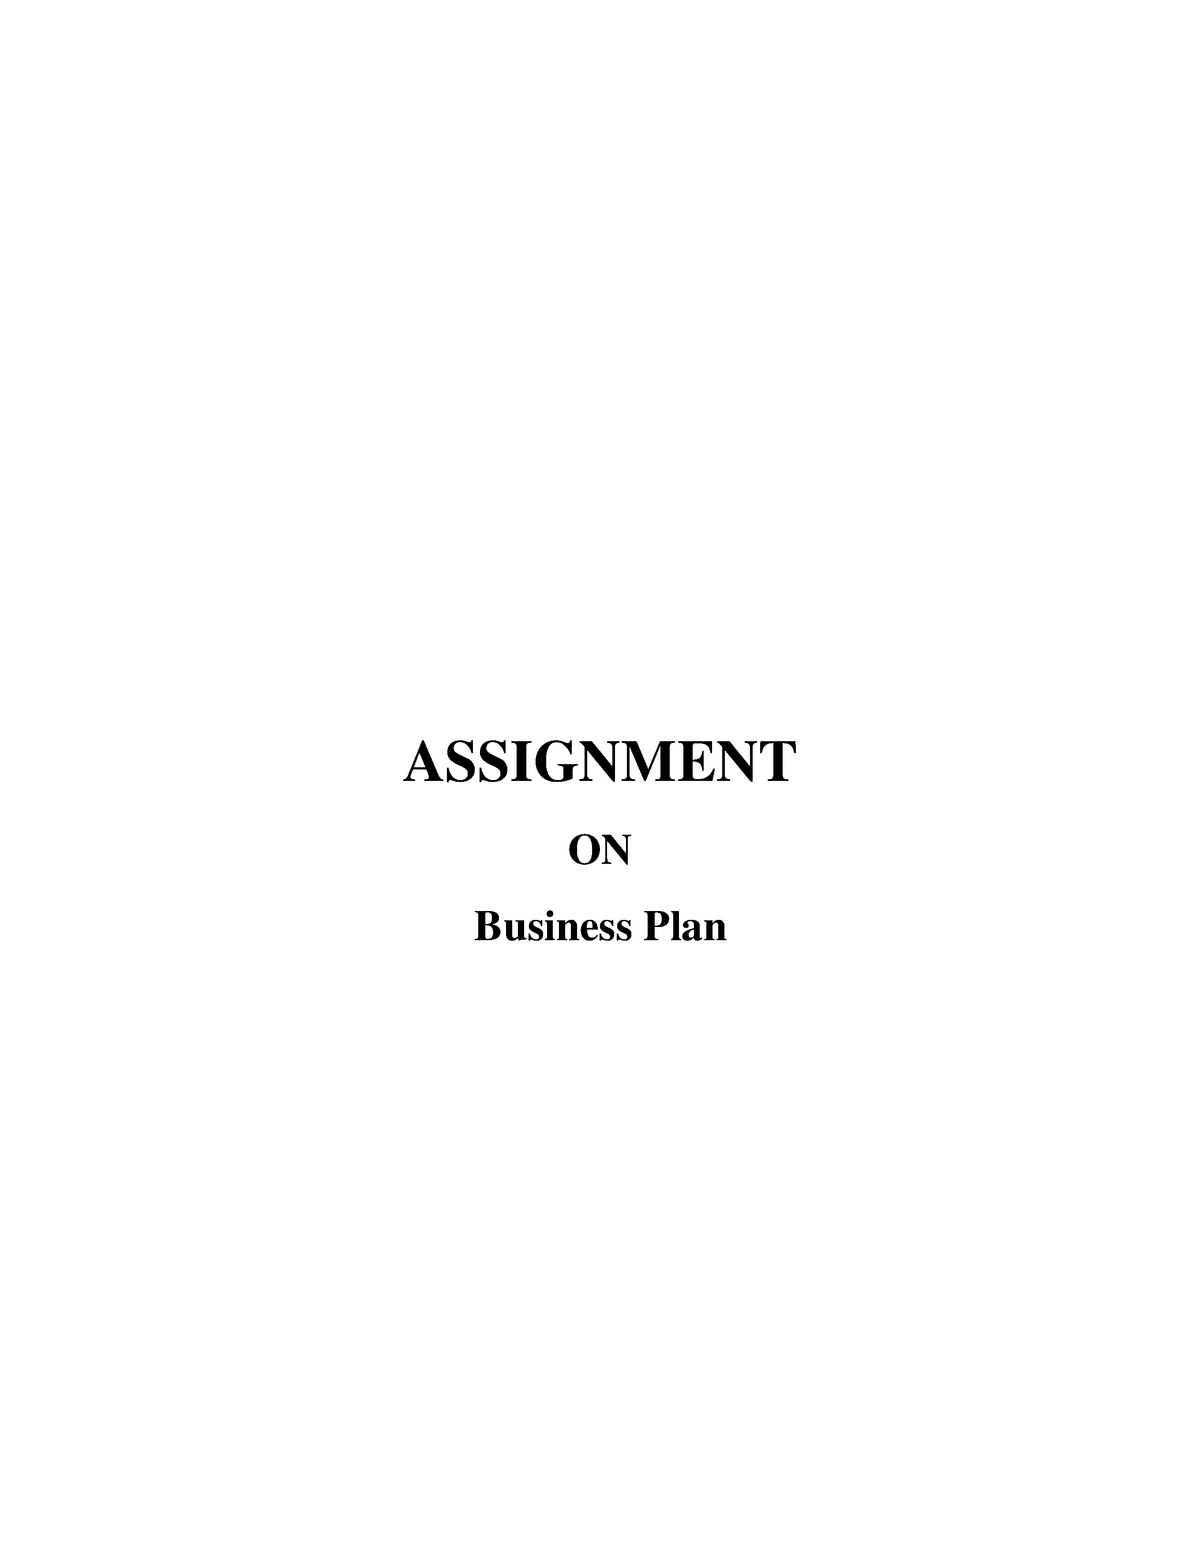 an assignment on business plan